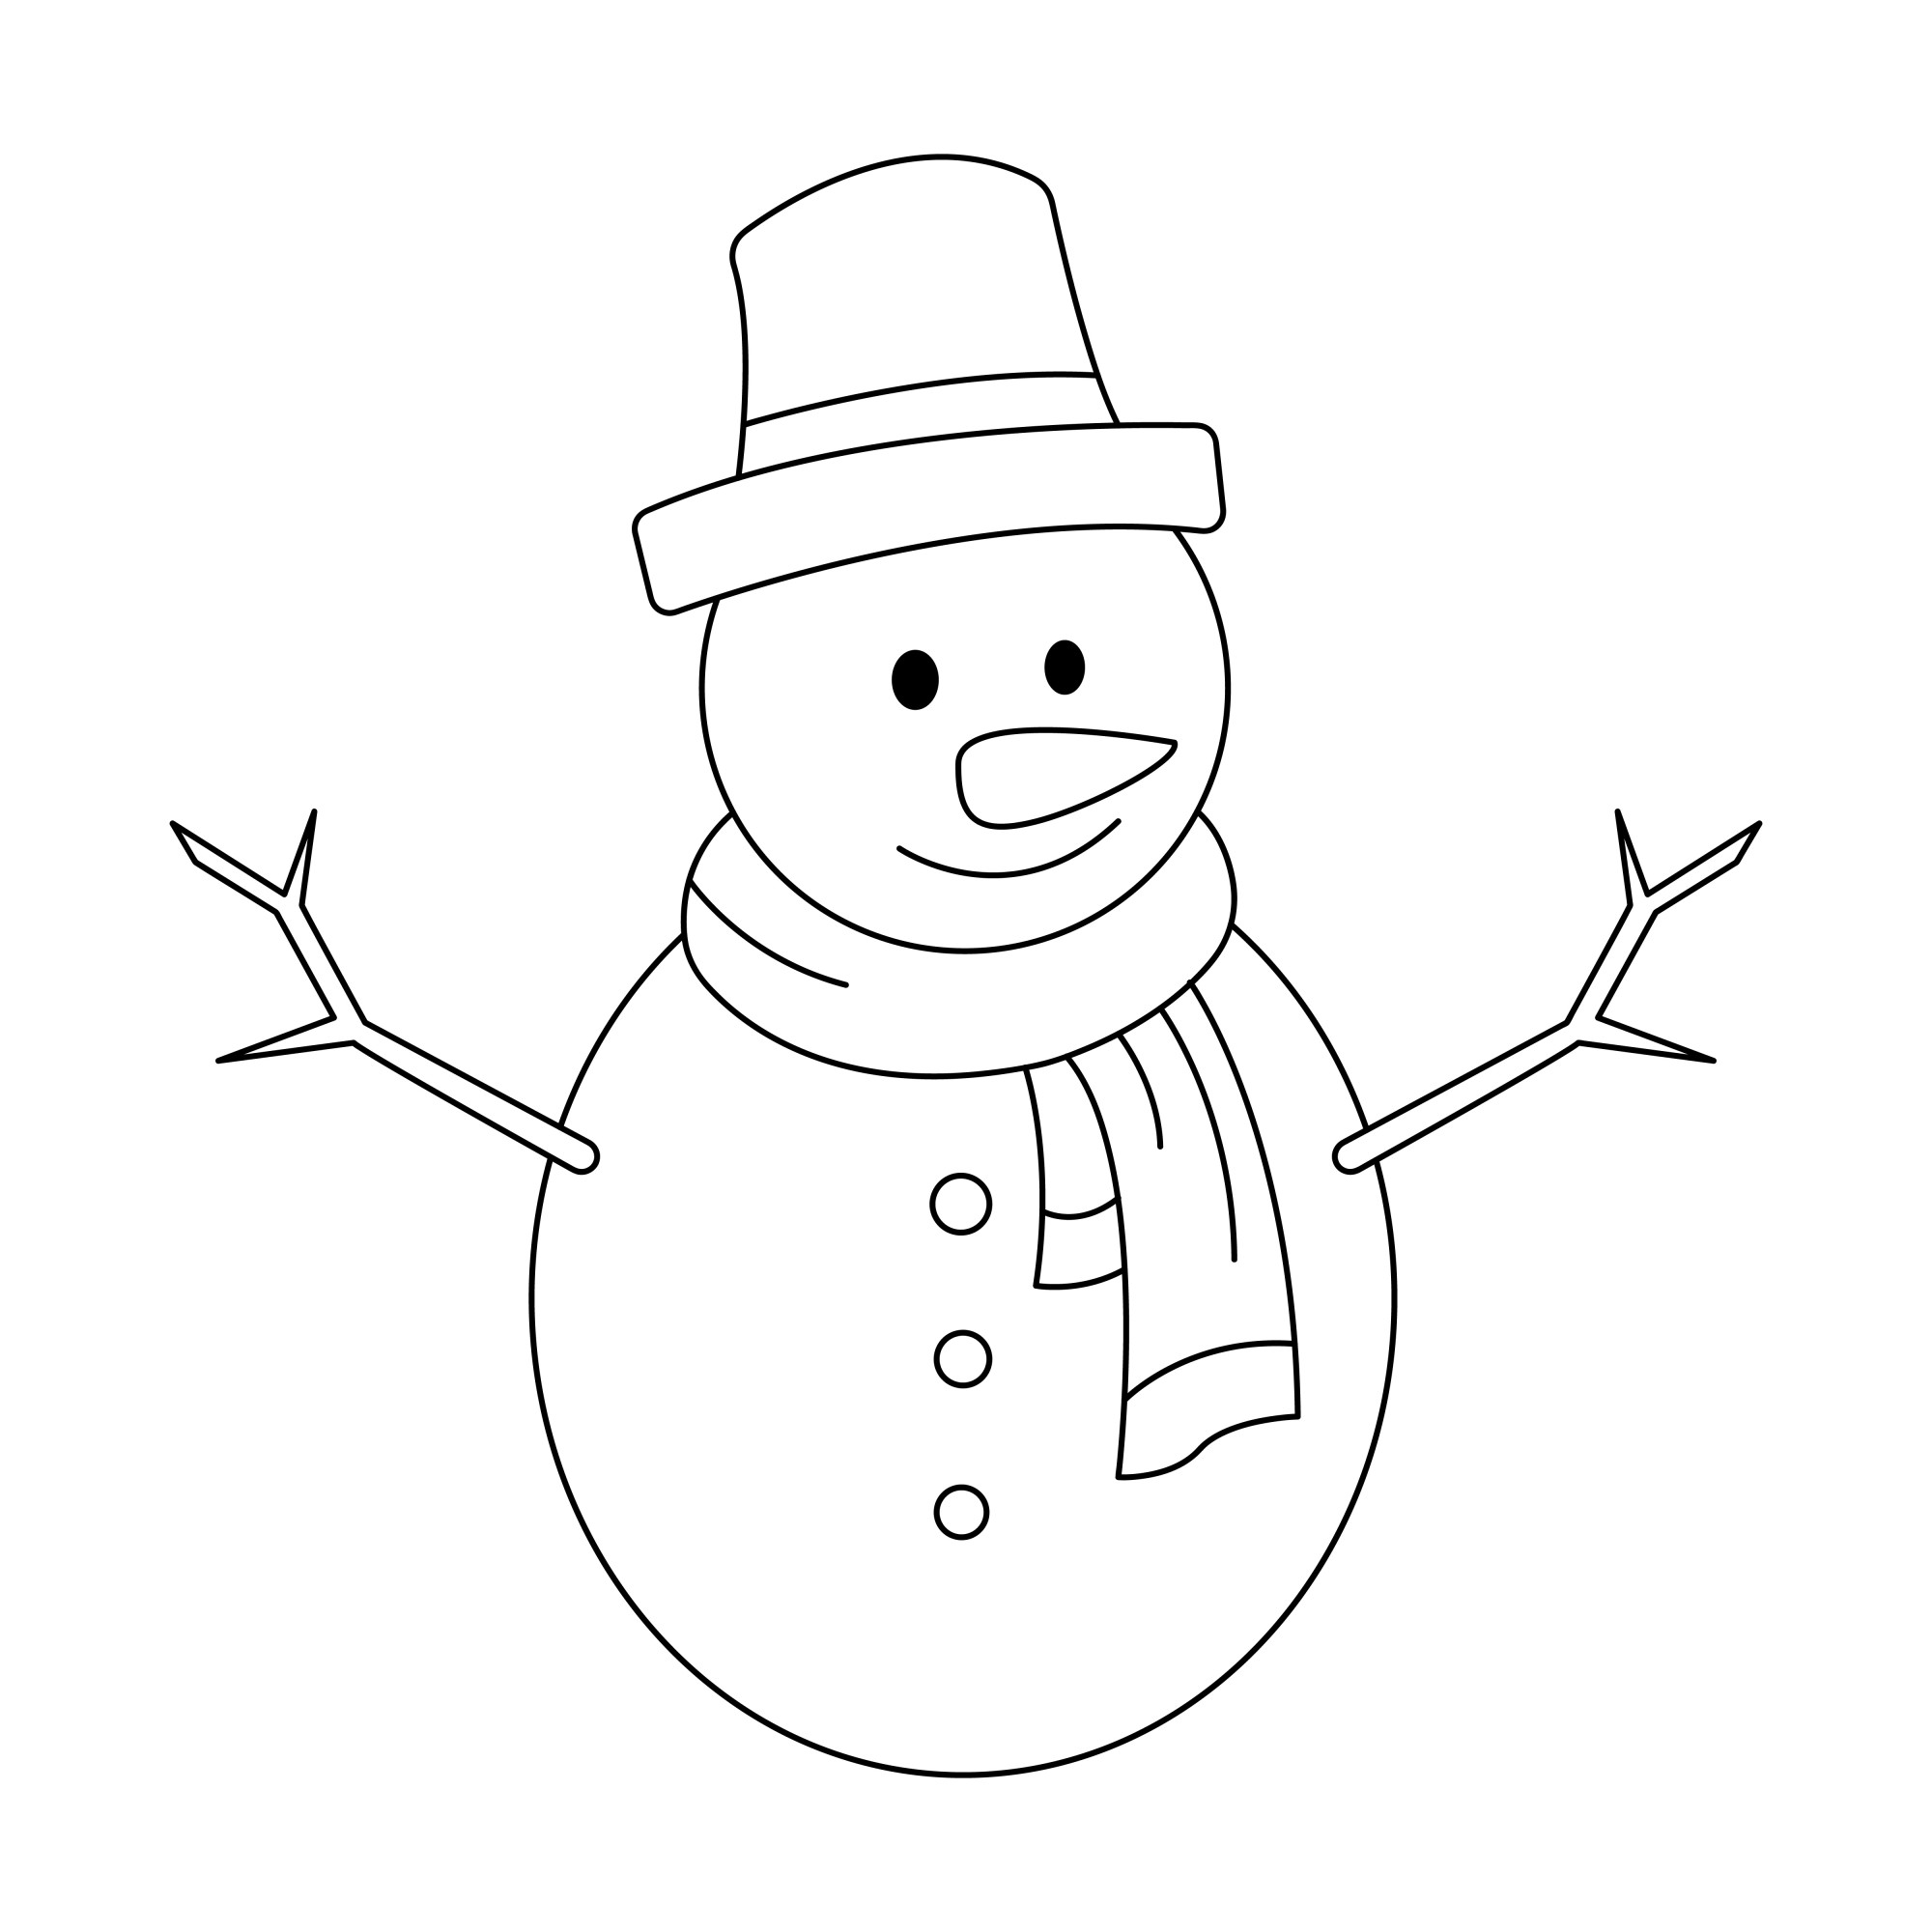 Раскраска для детей: белоснежный снеговик в шарфе